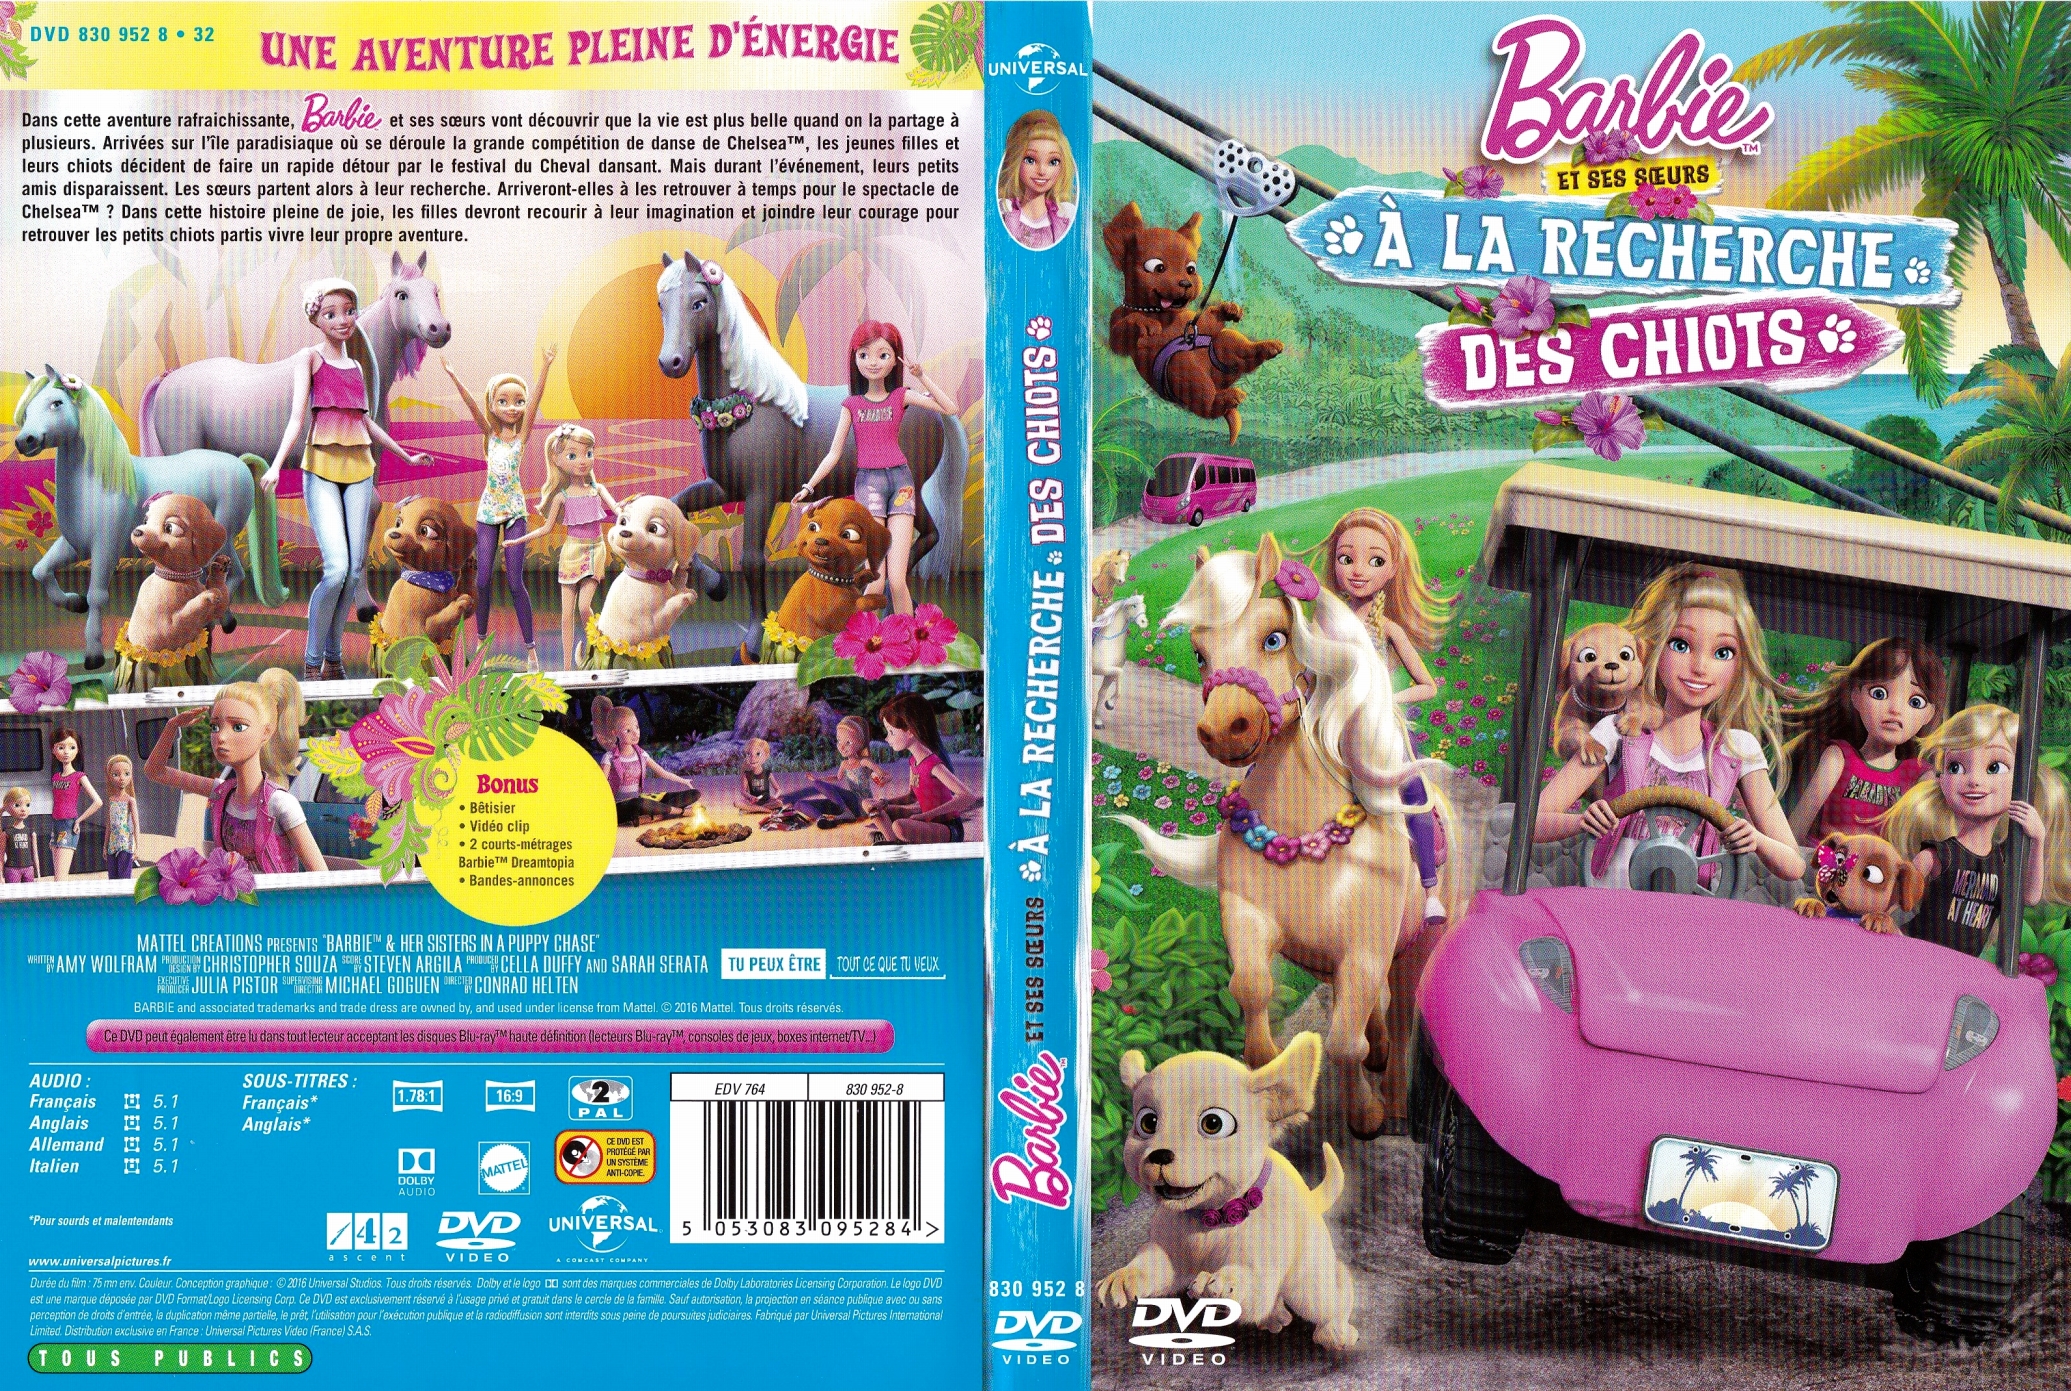 Jaquette DVD Barbie - A la recherche des chiots